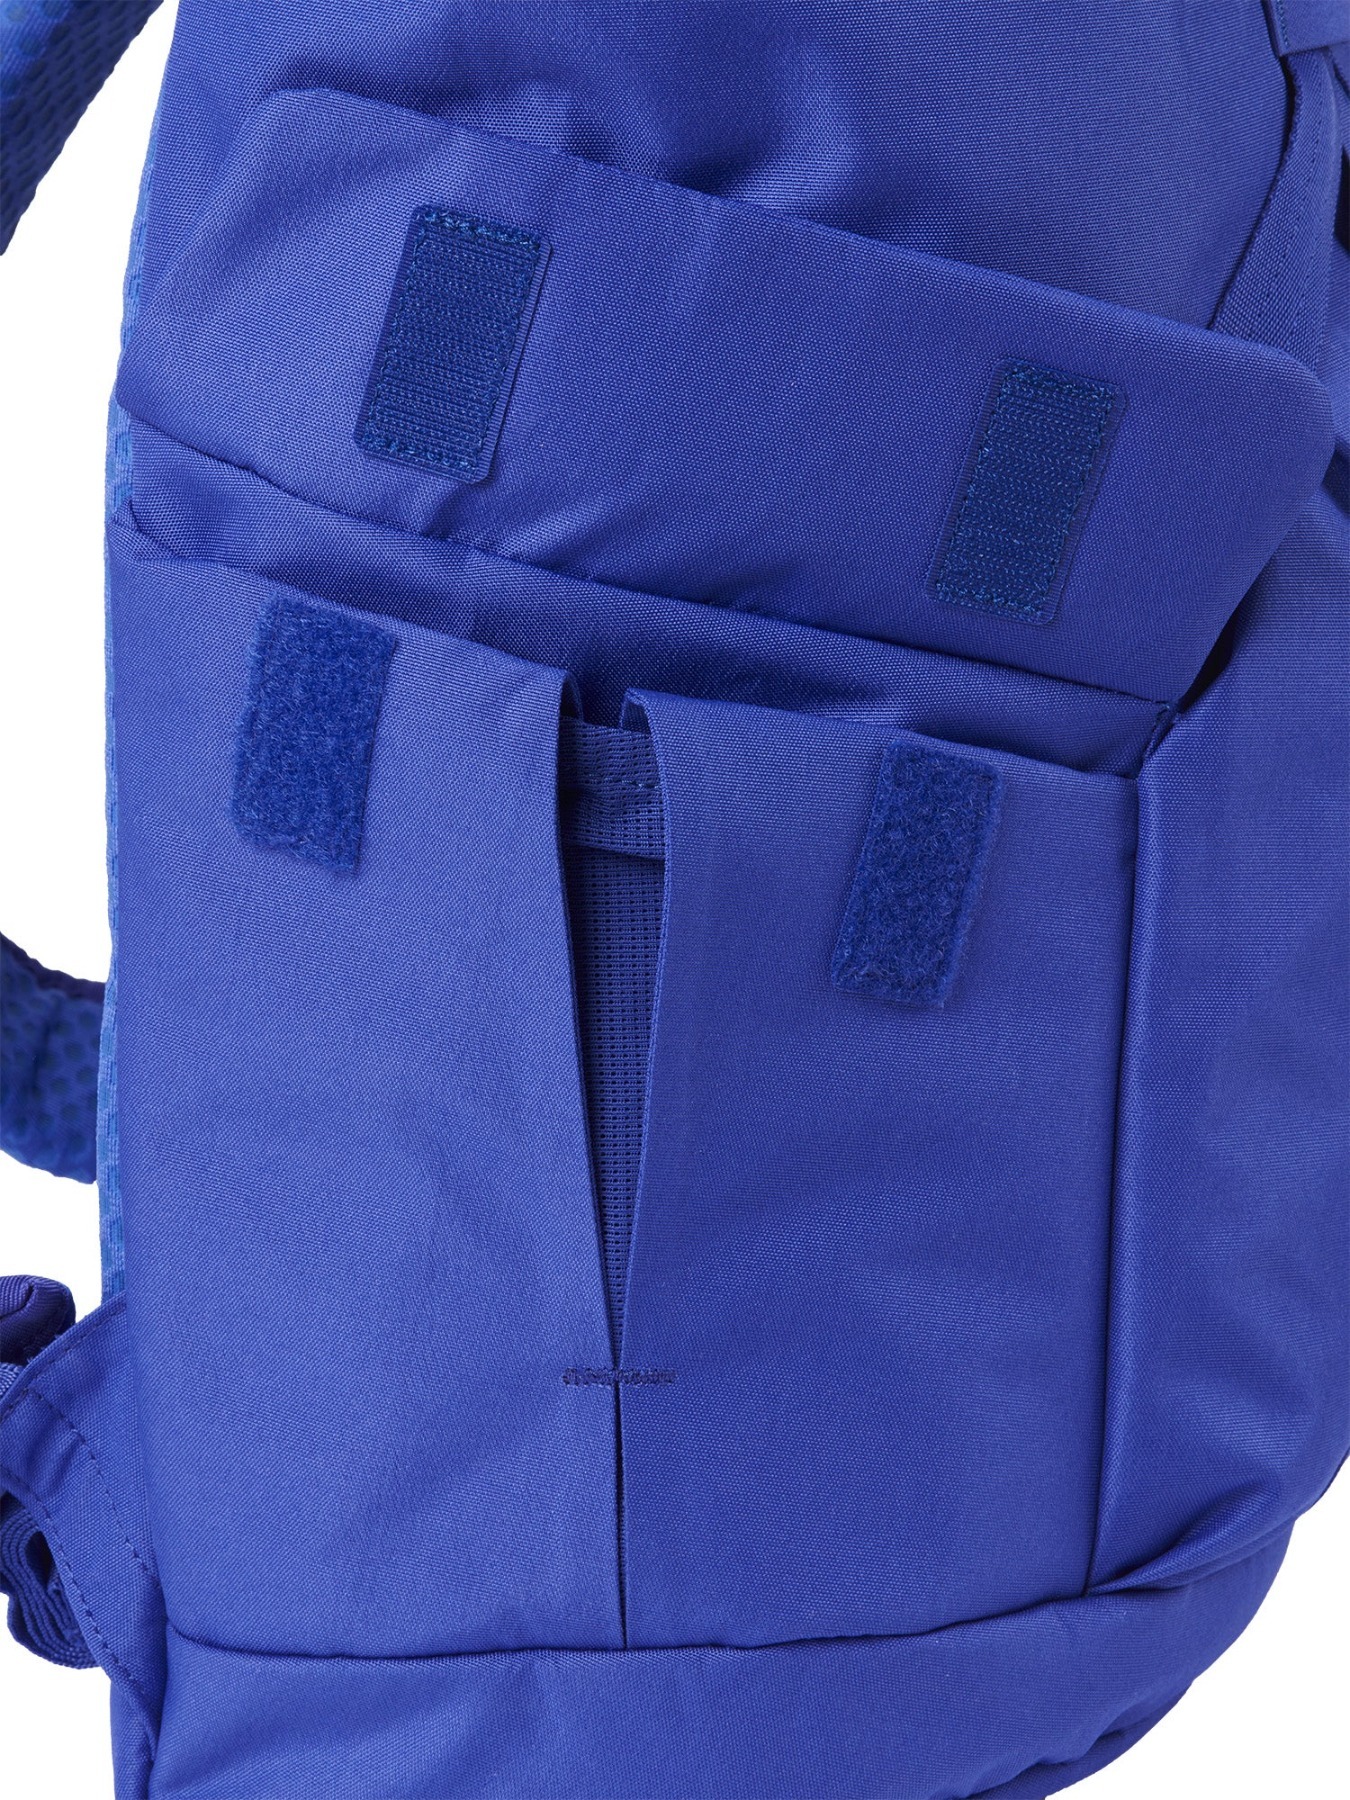 pinqponq Backpack KROSS - Poppy Blue 8